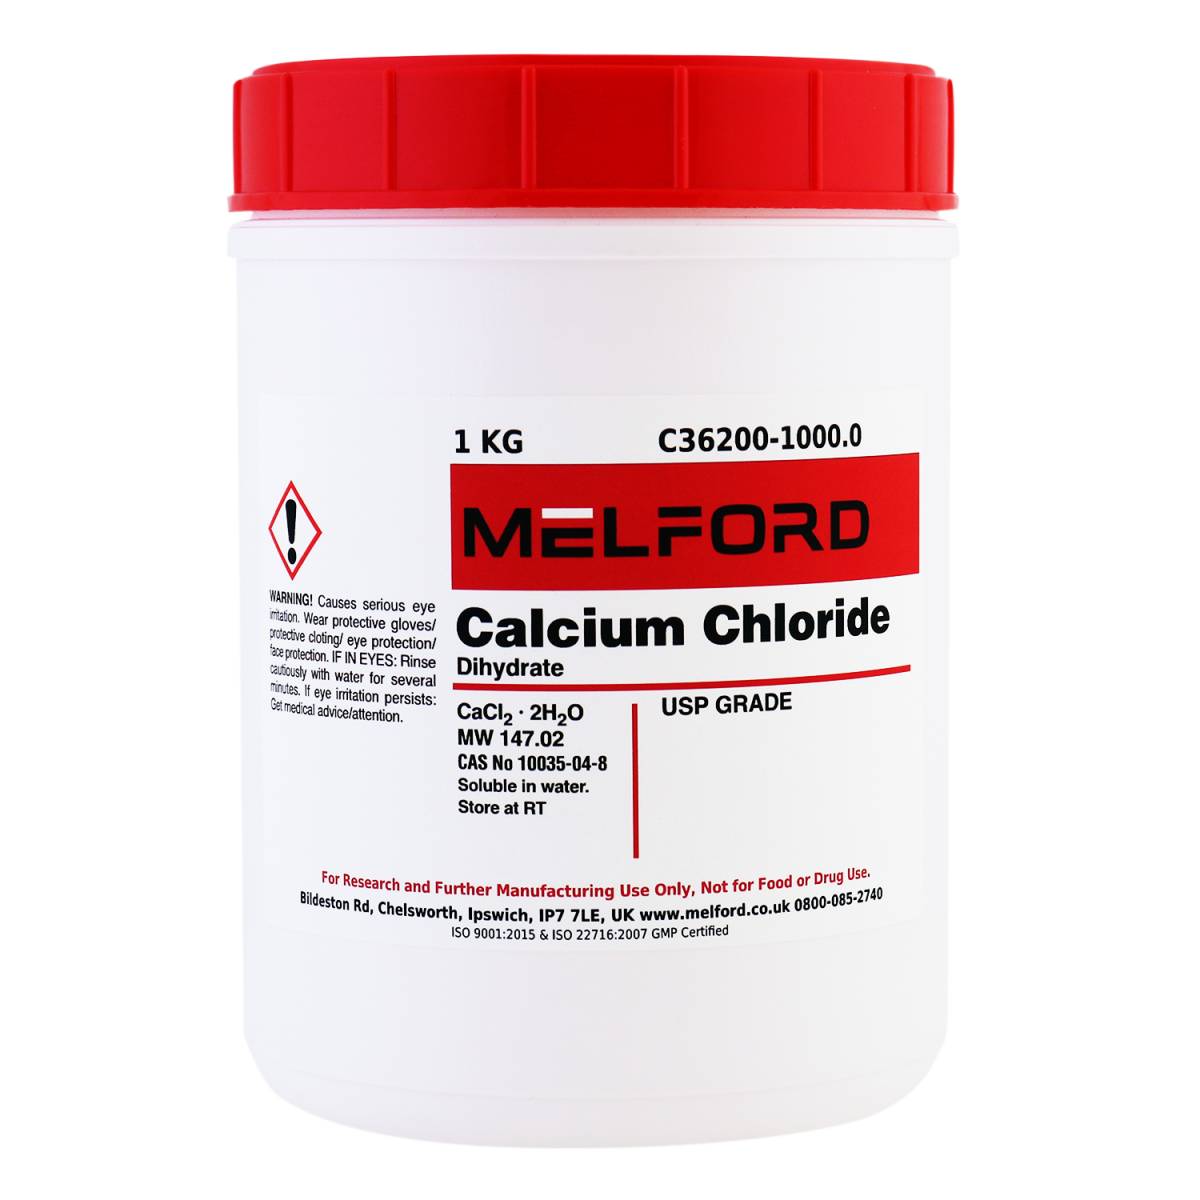 Calcium Chloride, Dihydrate, USP Grade, 1 Kilogram